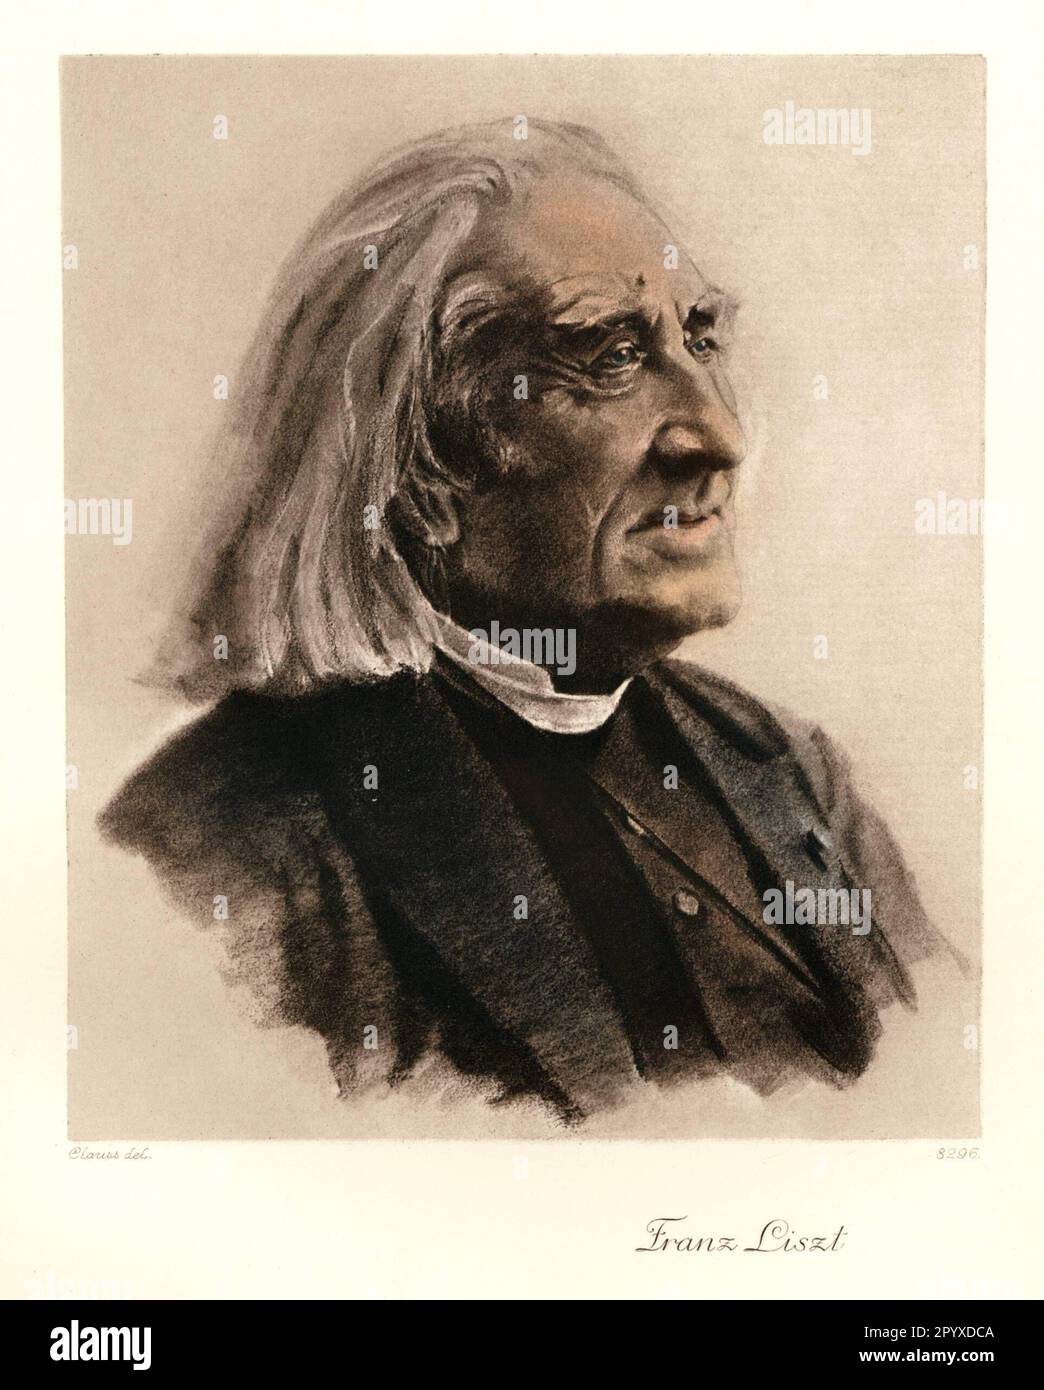 Franz von Liszt (1811-1886), compositeur et pianiste hongrois. Dessin par Clauss. Photo: Heliogravure, Corpus Imaginum, Collection Hanfstaengl. [traduction automatique] Banque D'Images